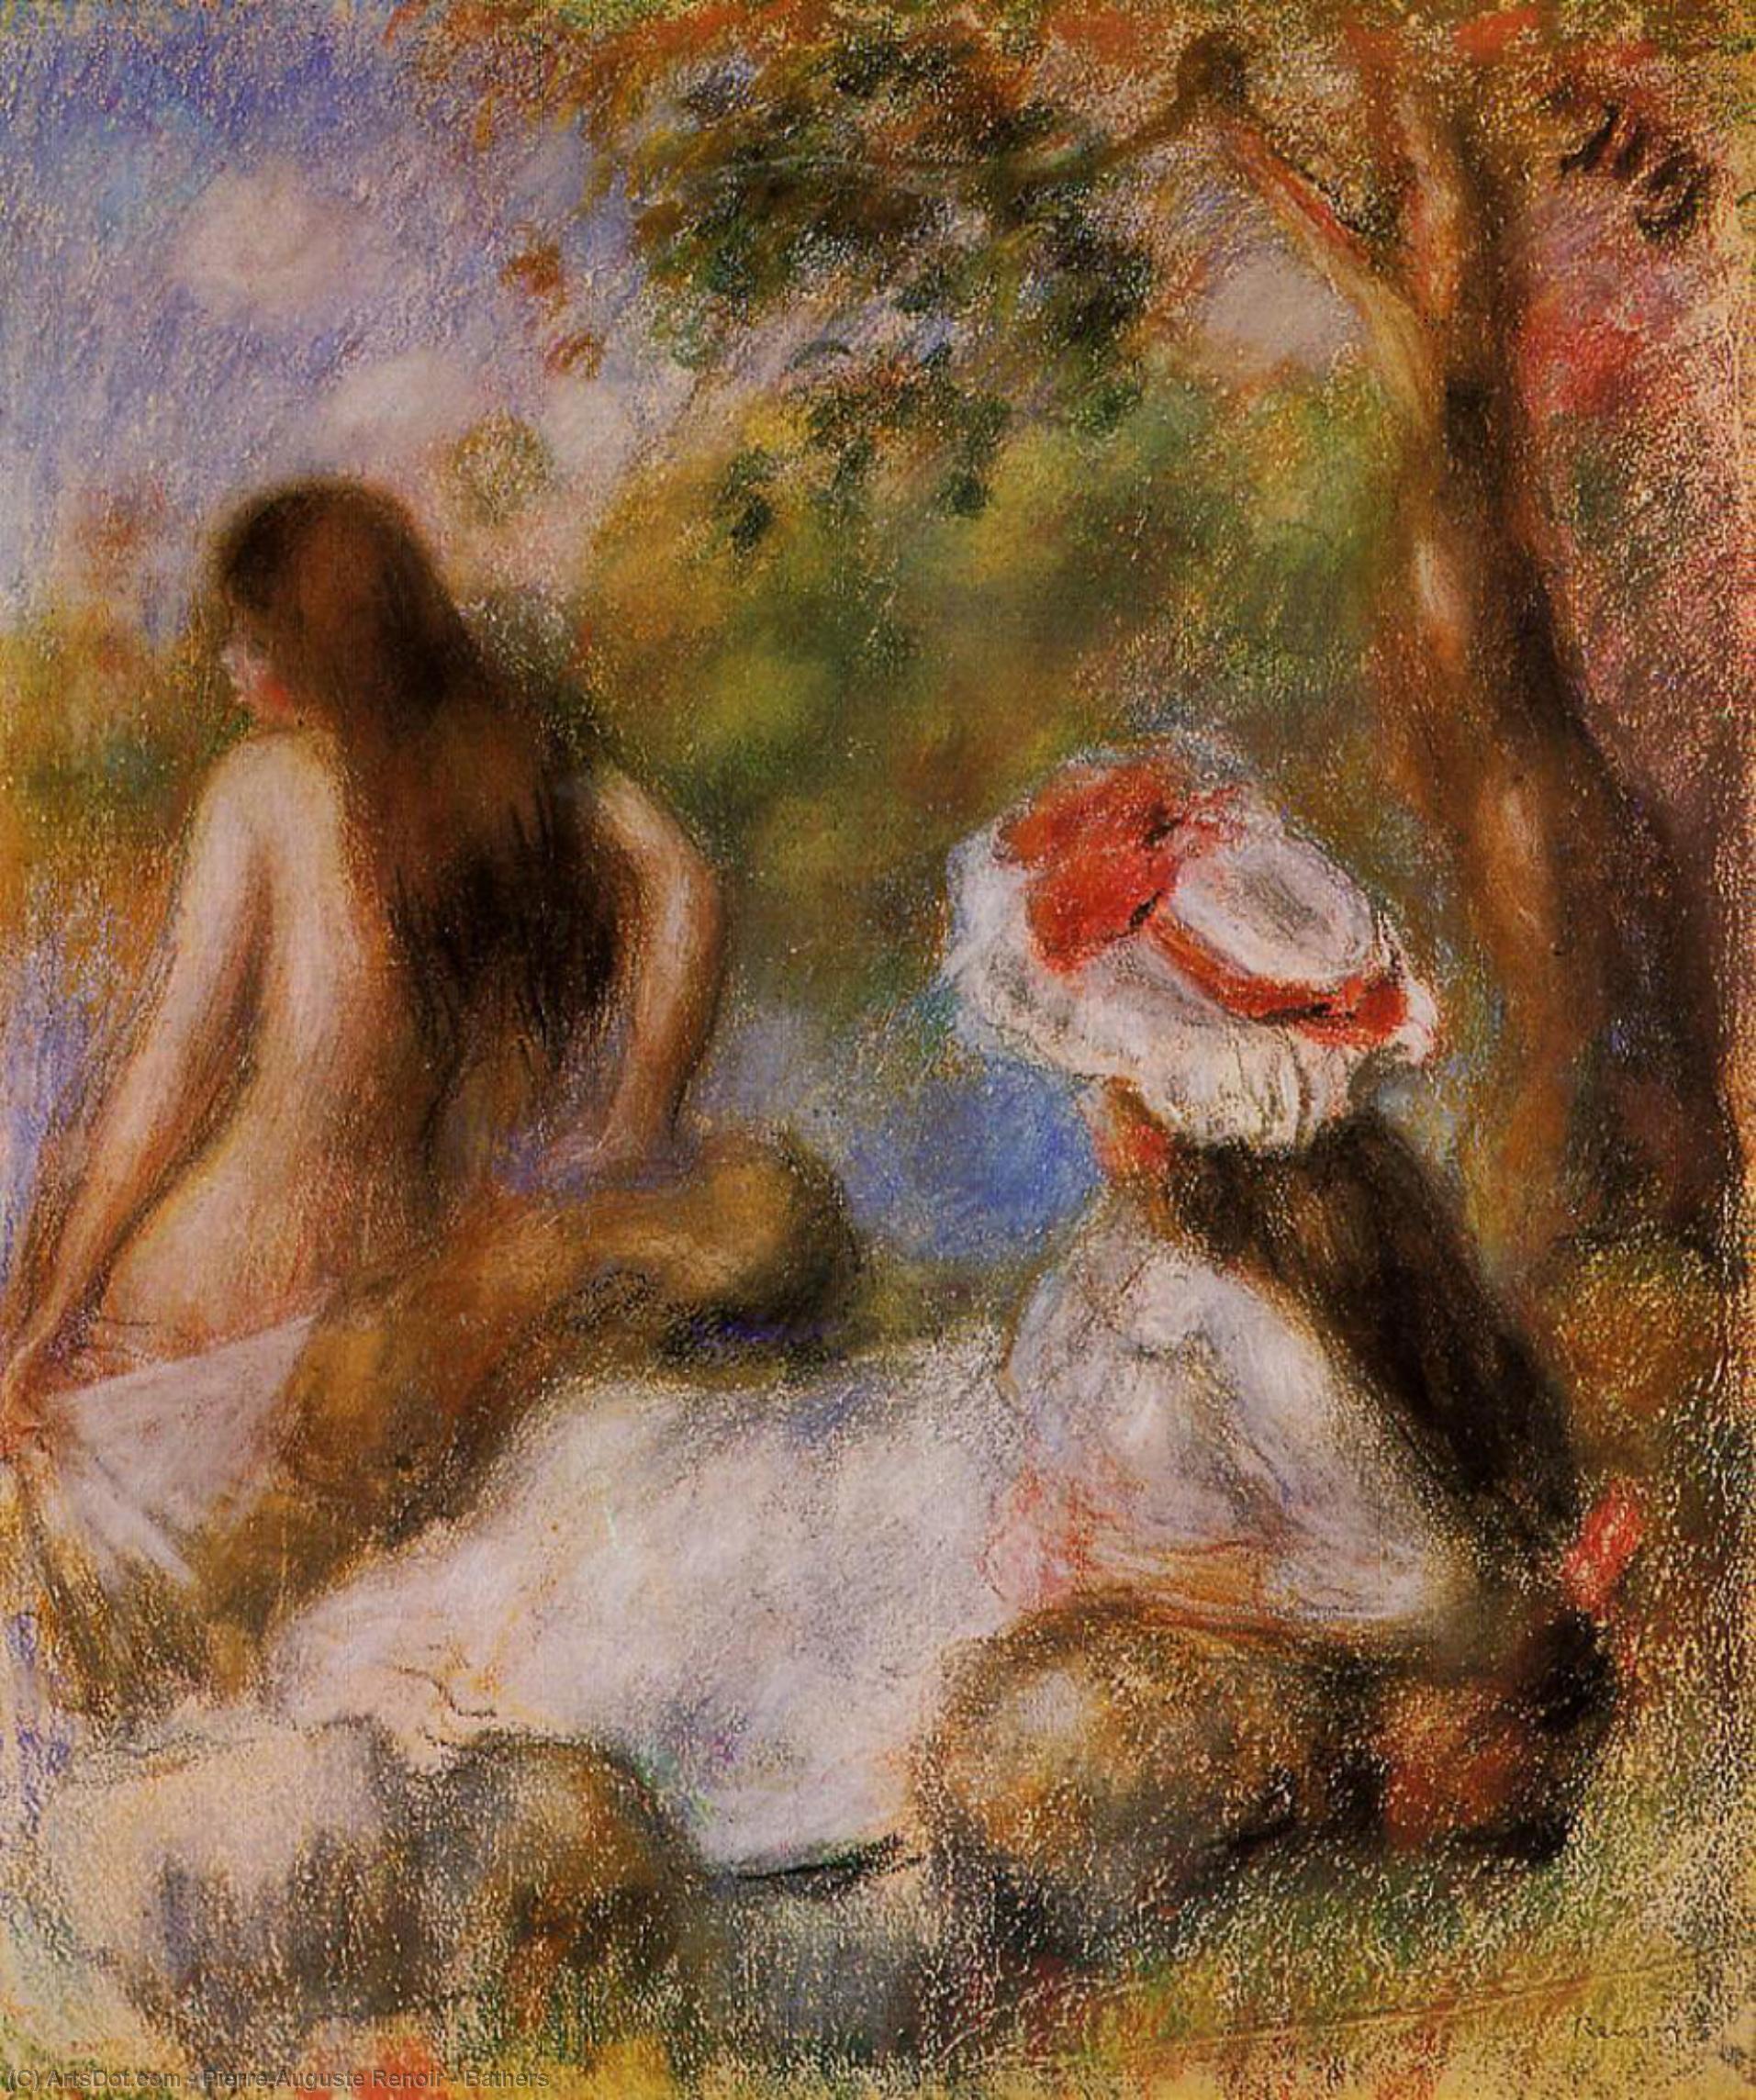 WikiOO.org - Enciklopedija dailės - Tapyba, meno kuriniai Pierre-Auguste Renoir - Bathers